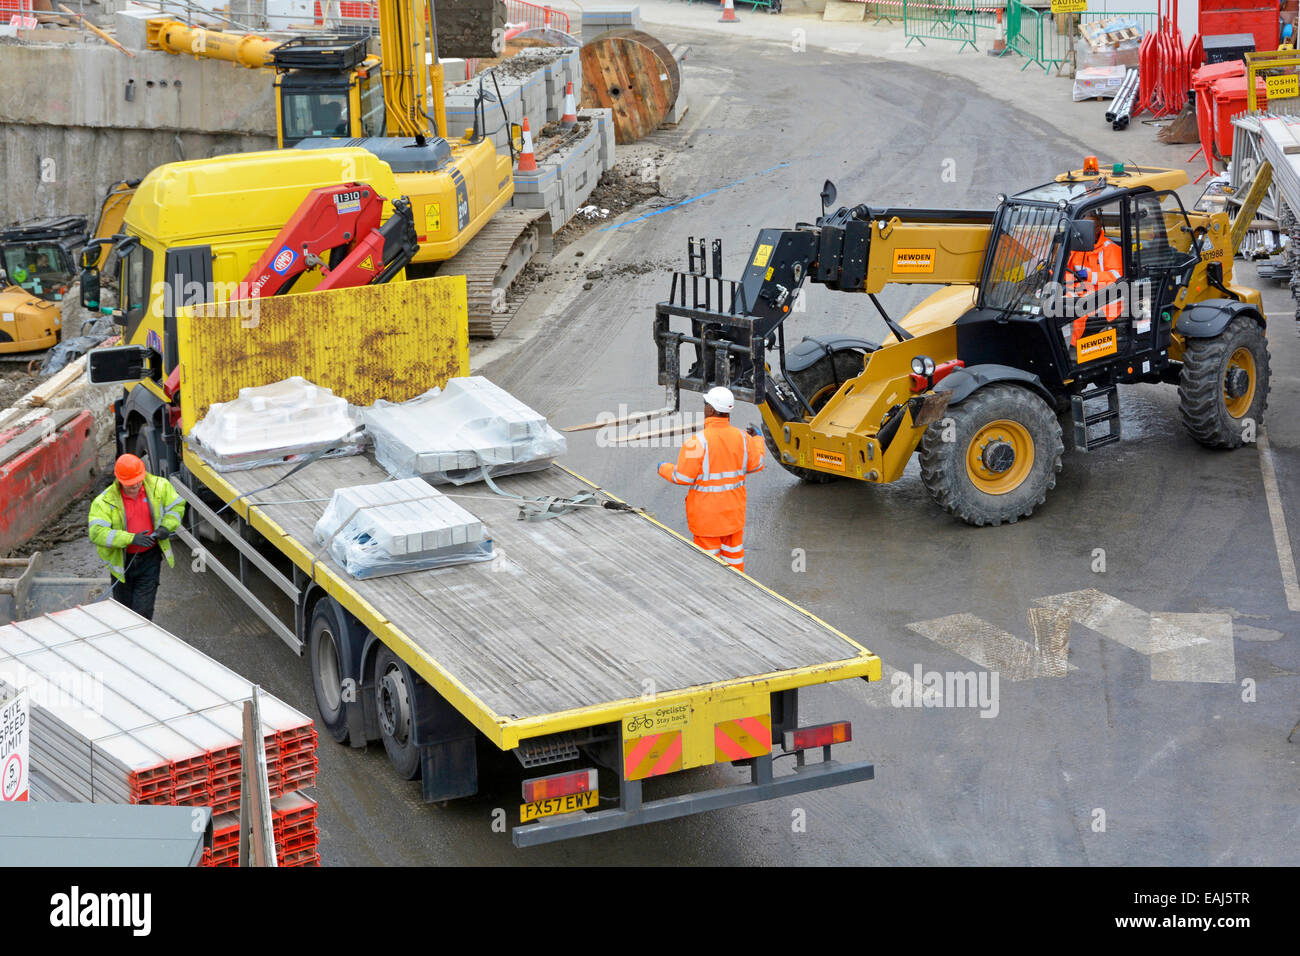 Vue aérienne bâtiment chantier de construction chariot élévateur à décharger camion camion de livraison à plat ouvriers portant un casque de sécurité et une veste haute visibilité Londres Royaume-Uni Banque D'Images